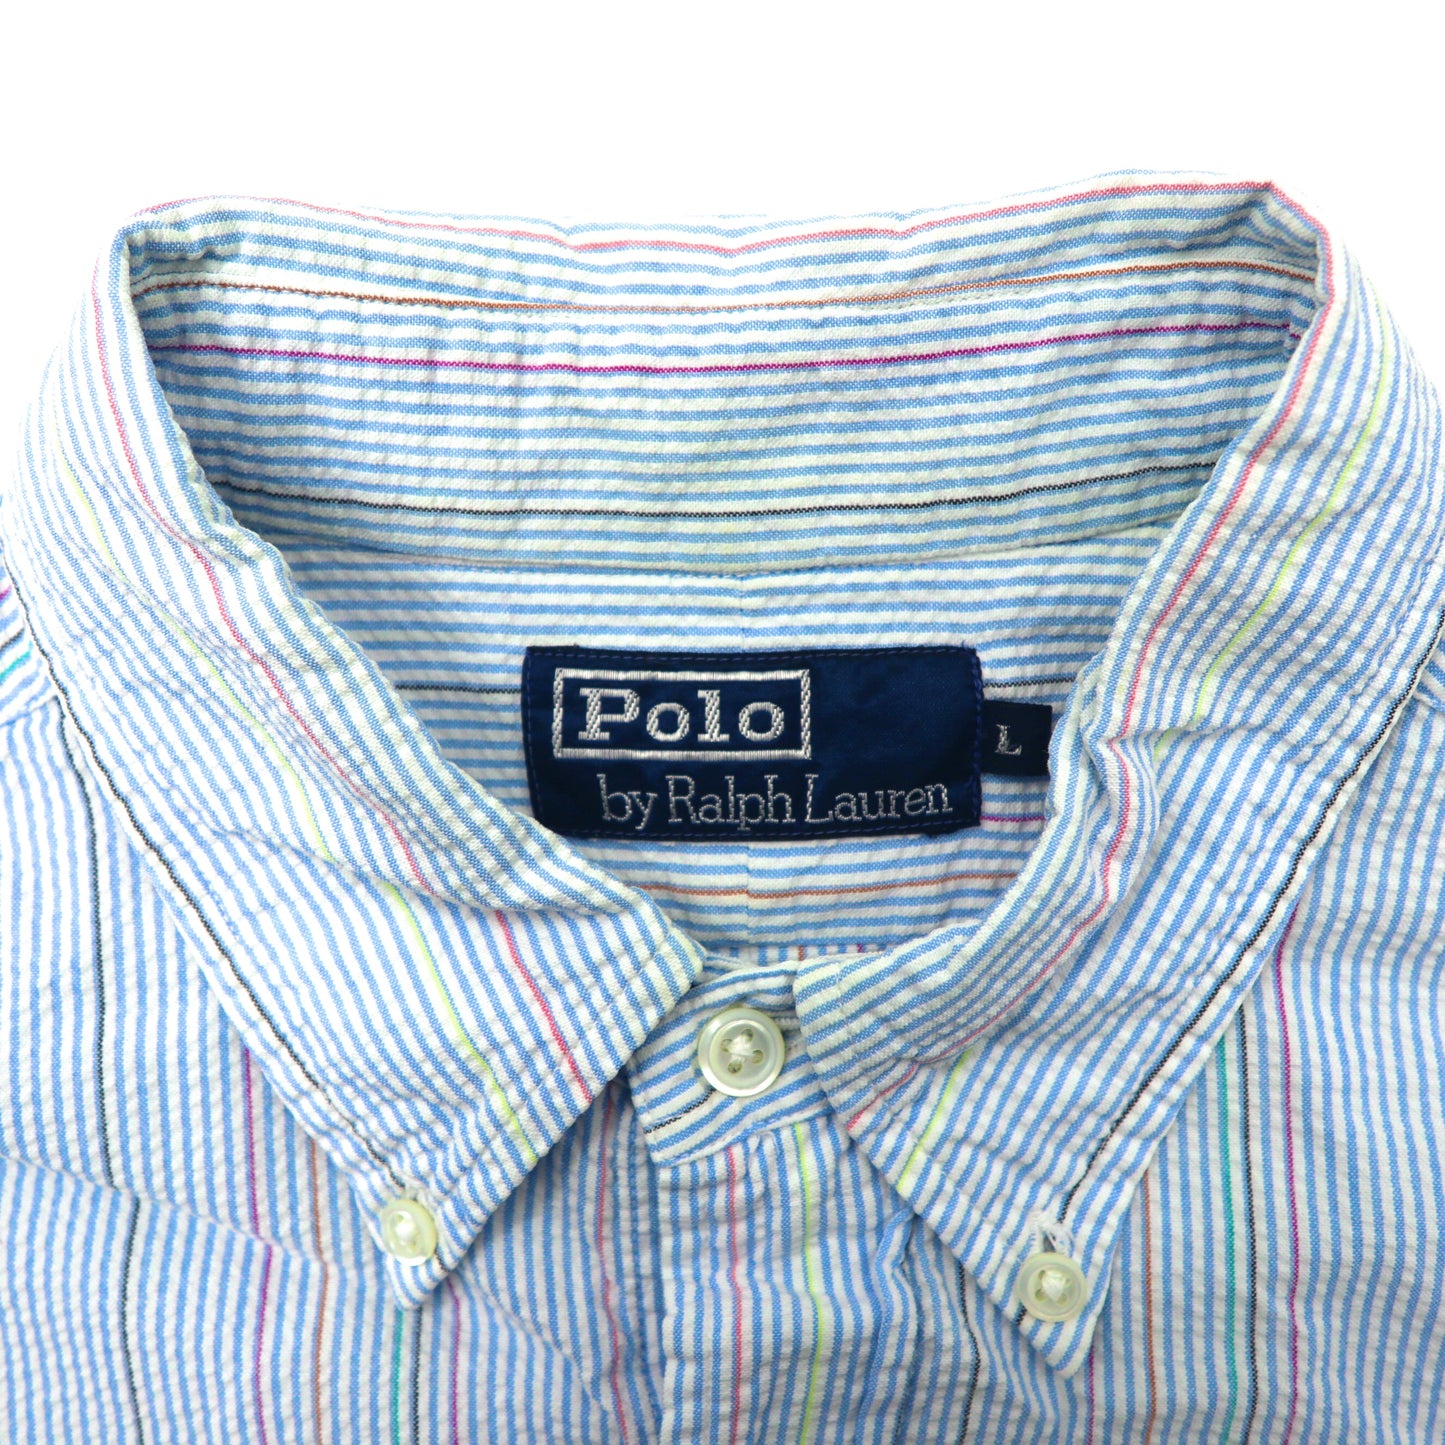 Polo by Ralph Lauren 半袖ボタンダウンシャツ L ブルー ストライプ  コットン シアサッカー スモールポニー刺繍